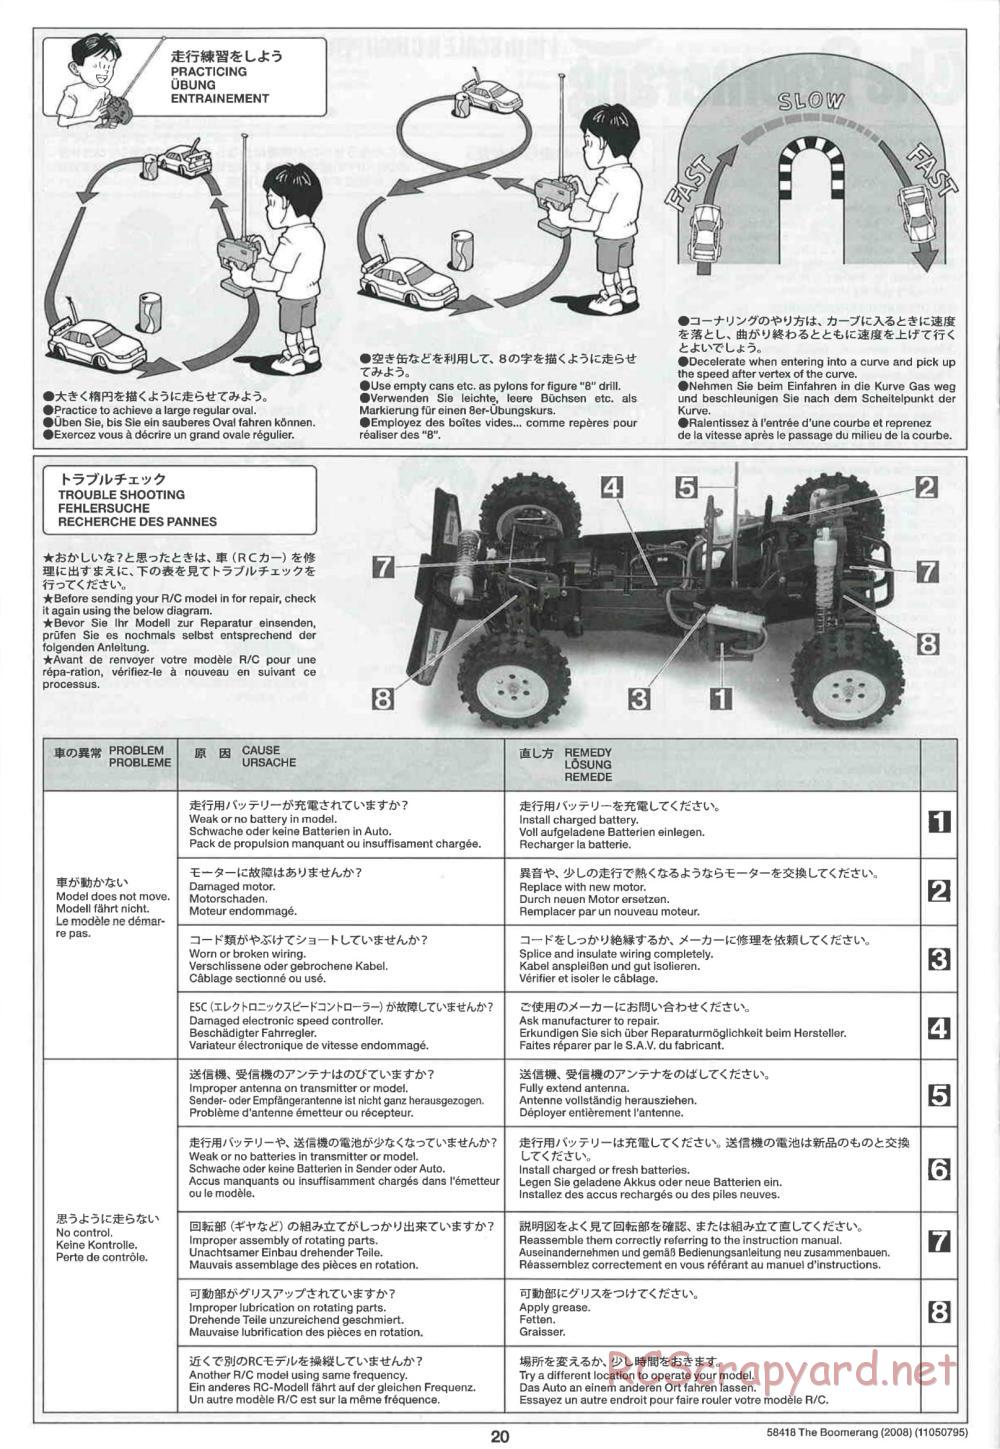 Tamiya - The Boomerang 2008 Chassis - Manual - Page 20